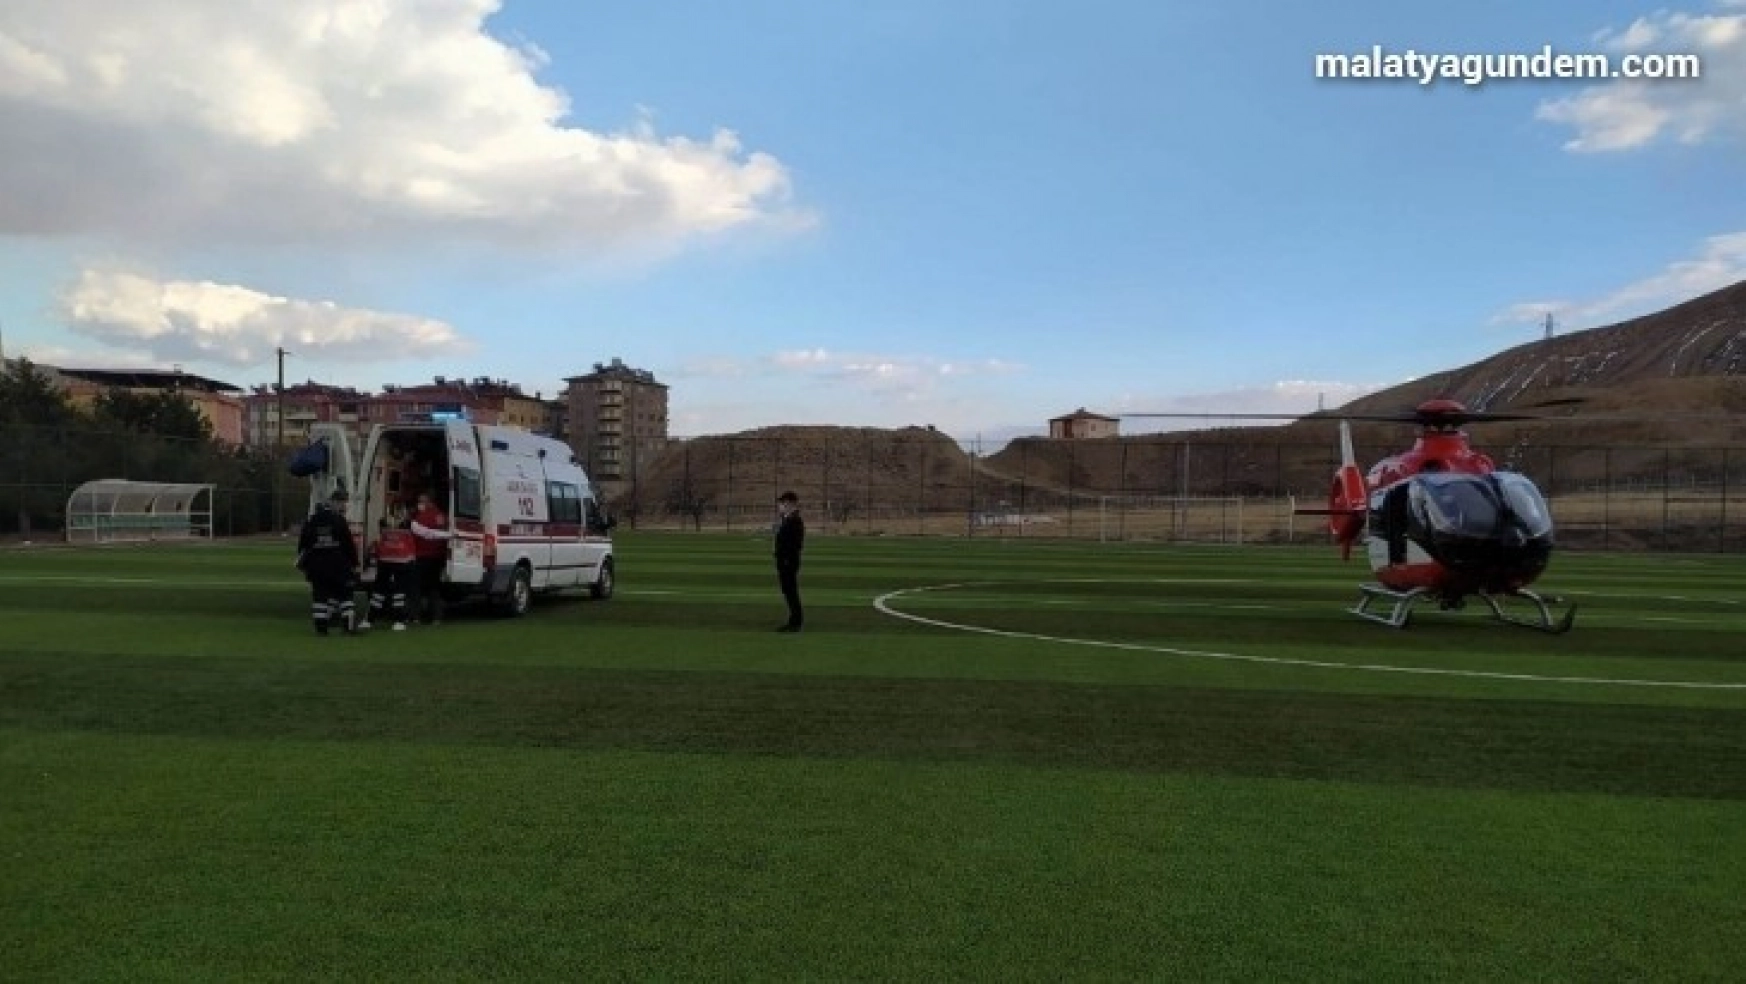 Elini cam kesen gencin imdadına ambulans helikopter yetişti